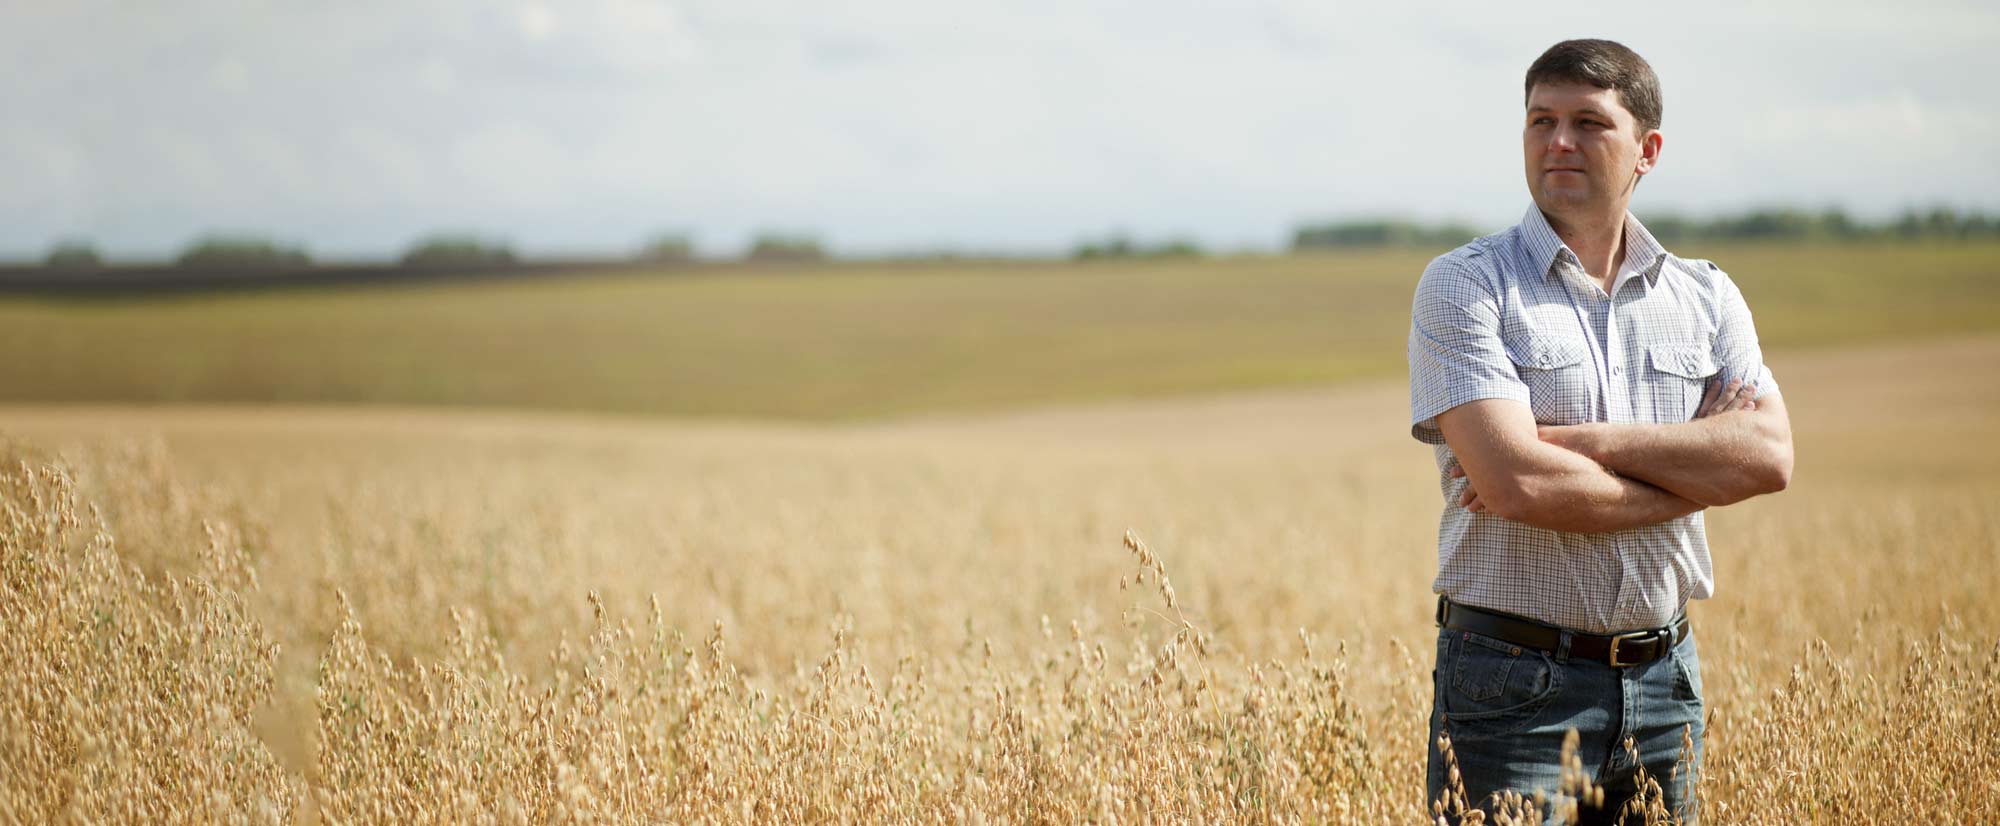 Группа людей в поле. Мужская фотосессия в поле. Мужик в поле. Портрет в поле мужчина. Мужской портрет в пшеничном поле.